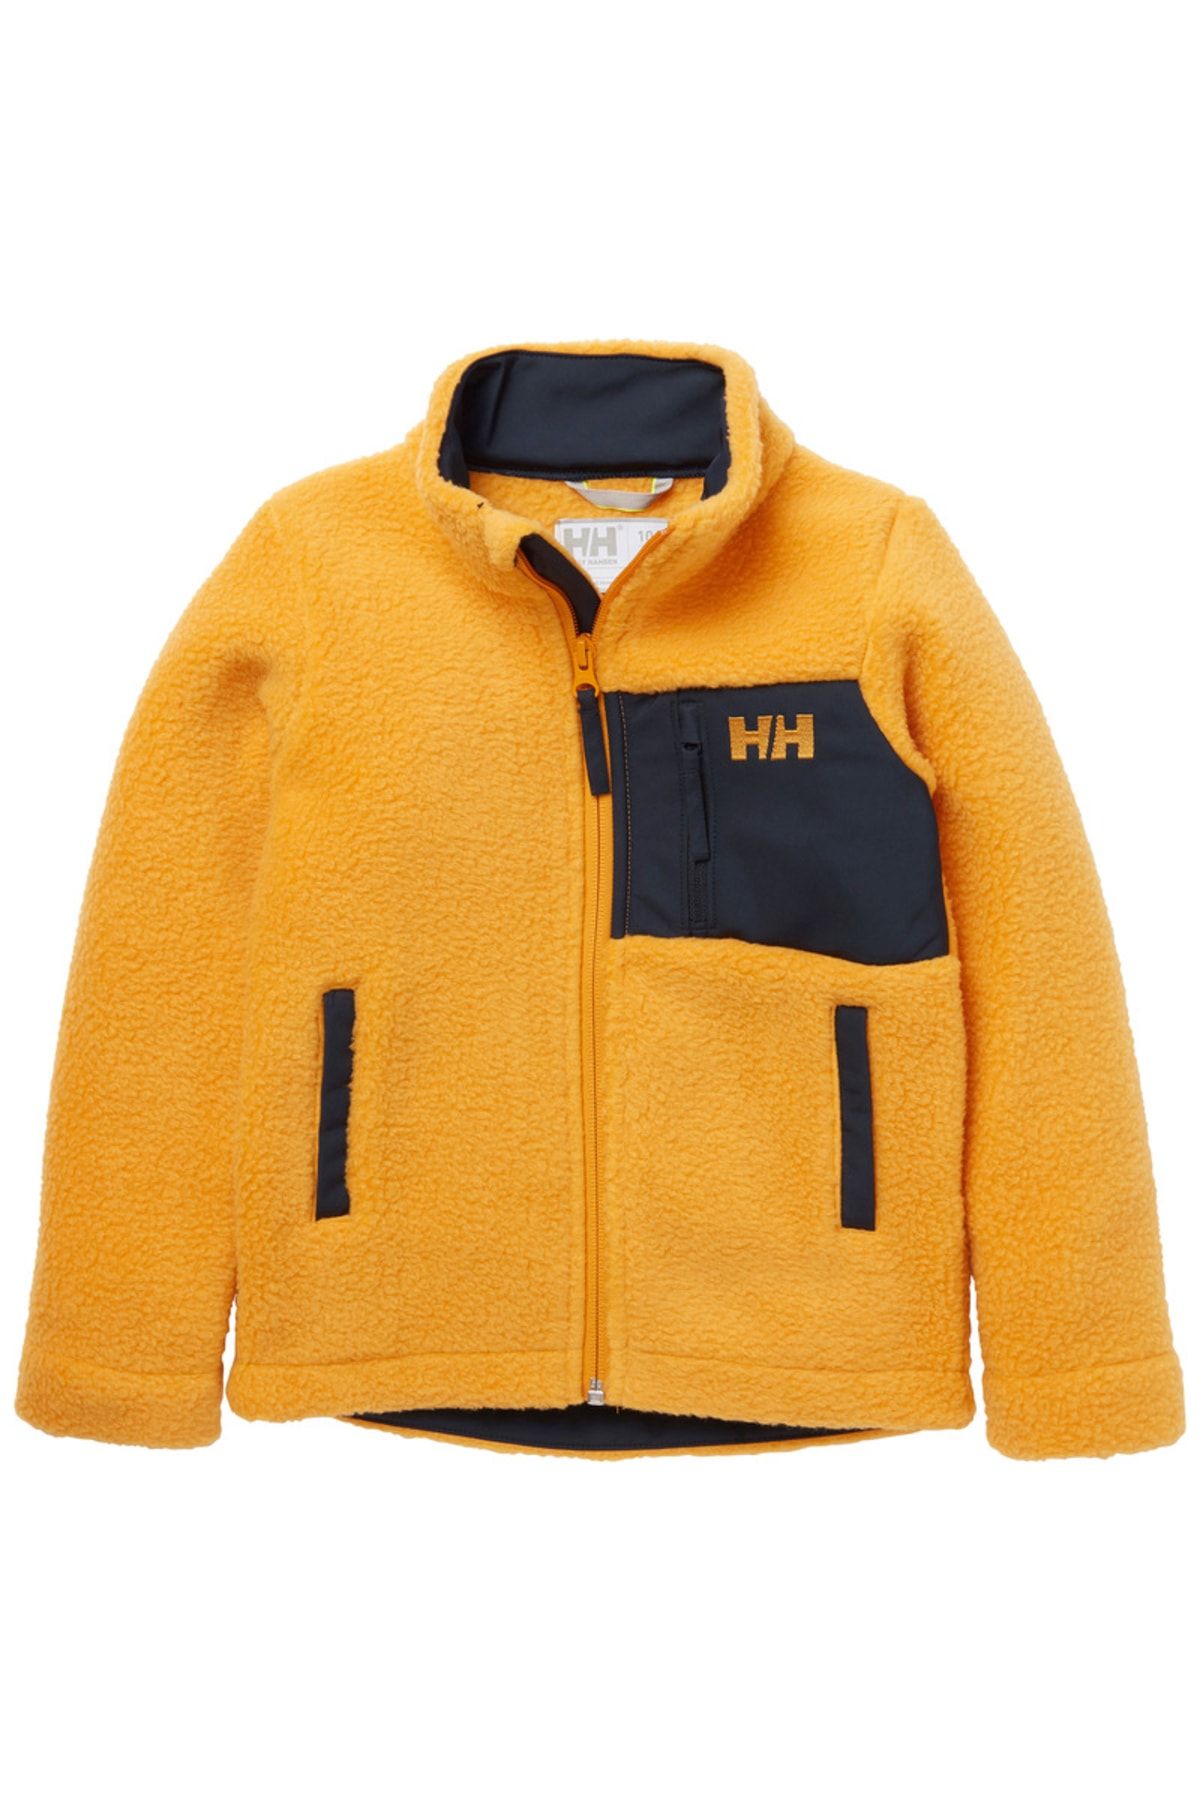 Helly Hansen Hh K Champ Pıle Jacket - Çocuk Polar Ceket